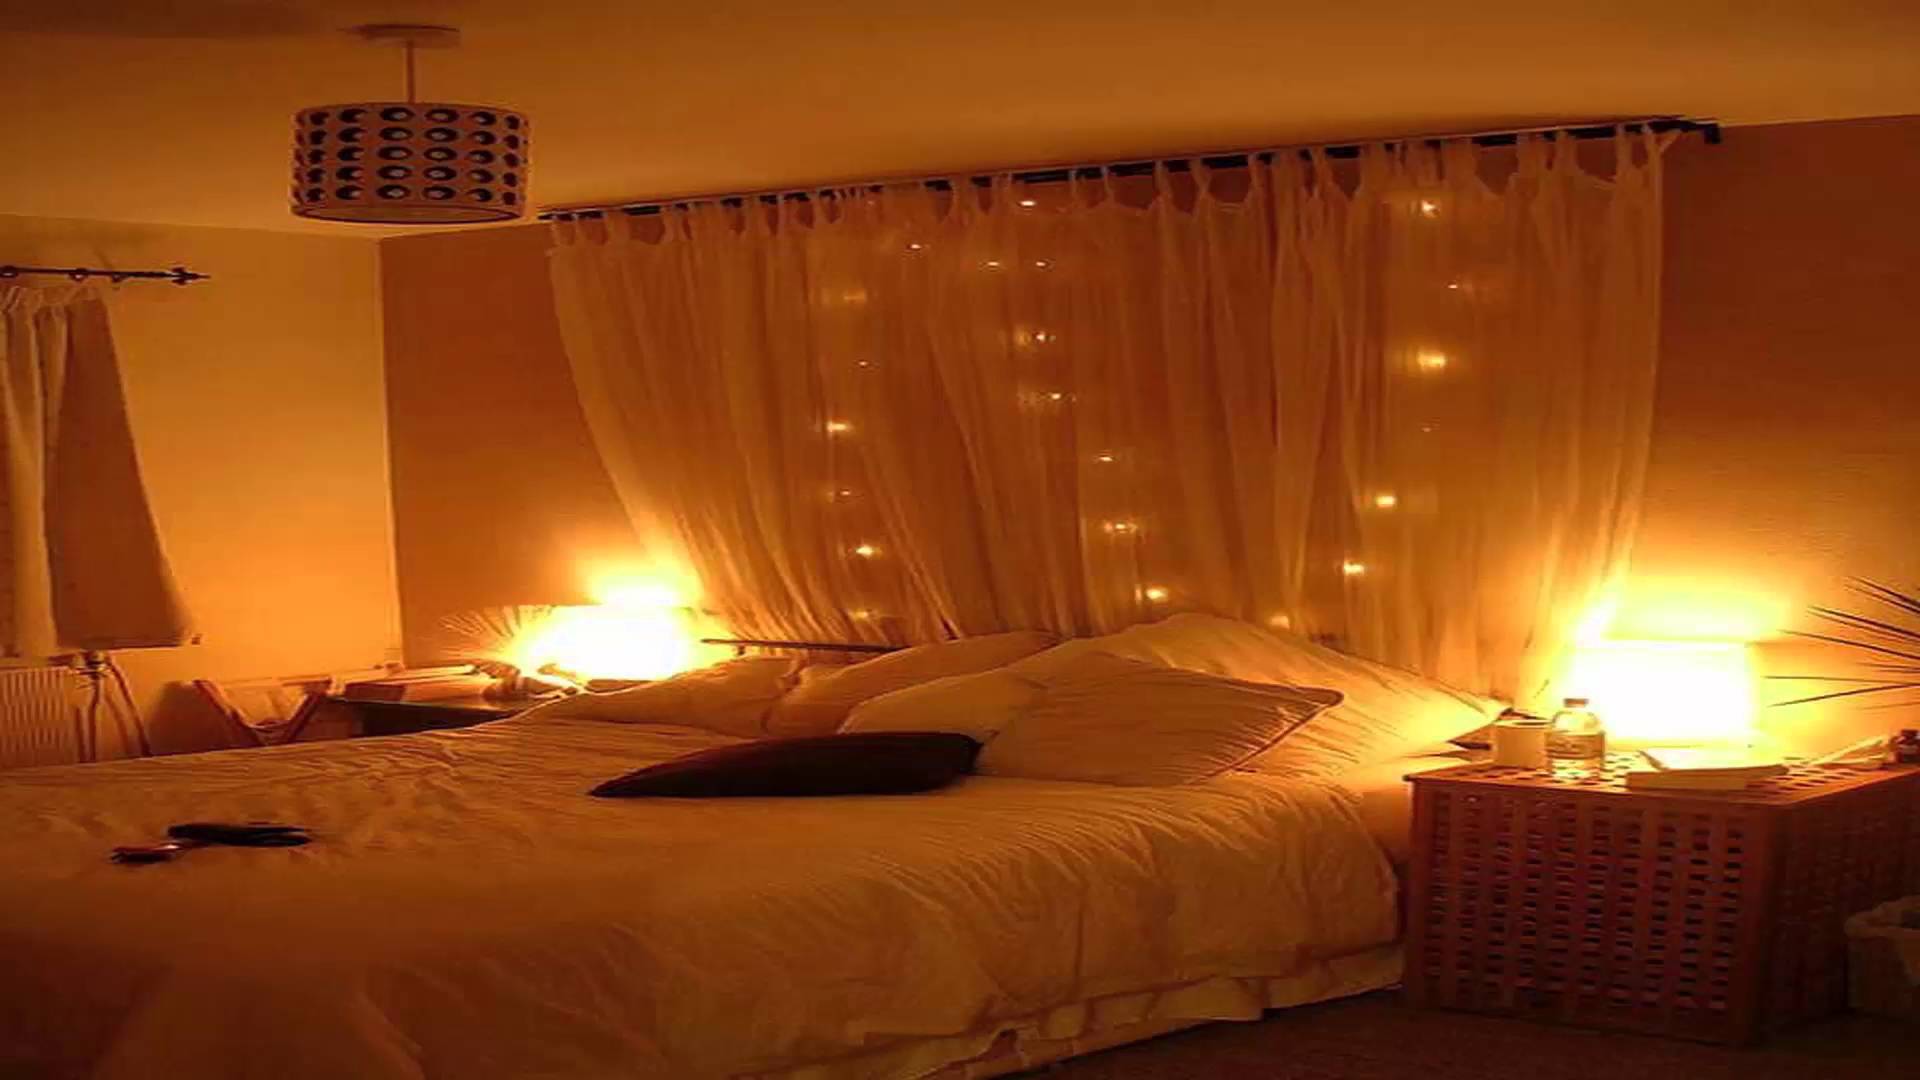 Текст вечером в комнате. Романтическая комната. Кровать для брачной ночи. Романтическая спальня. Свечи в спальне.